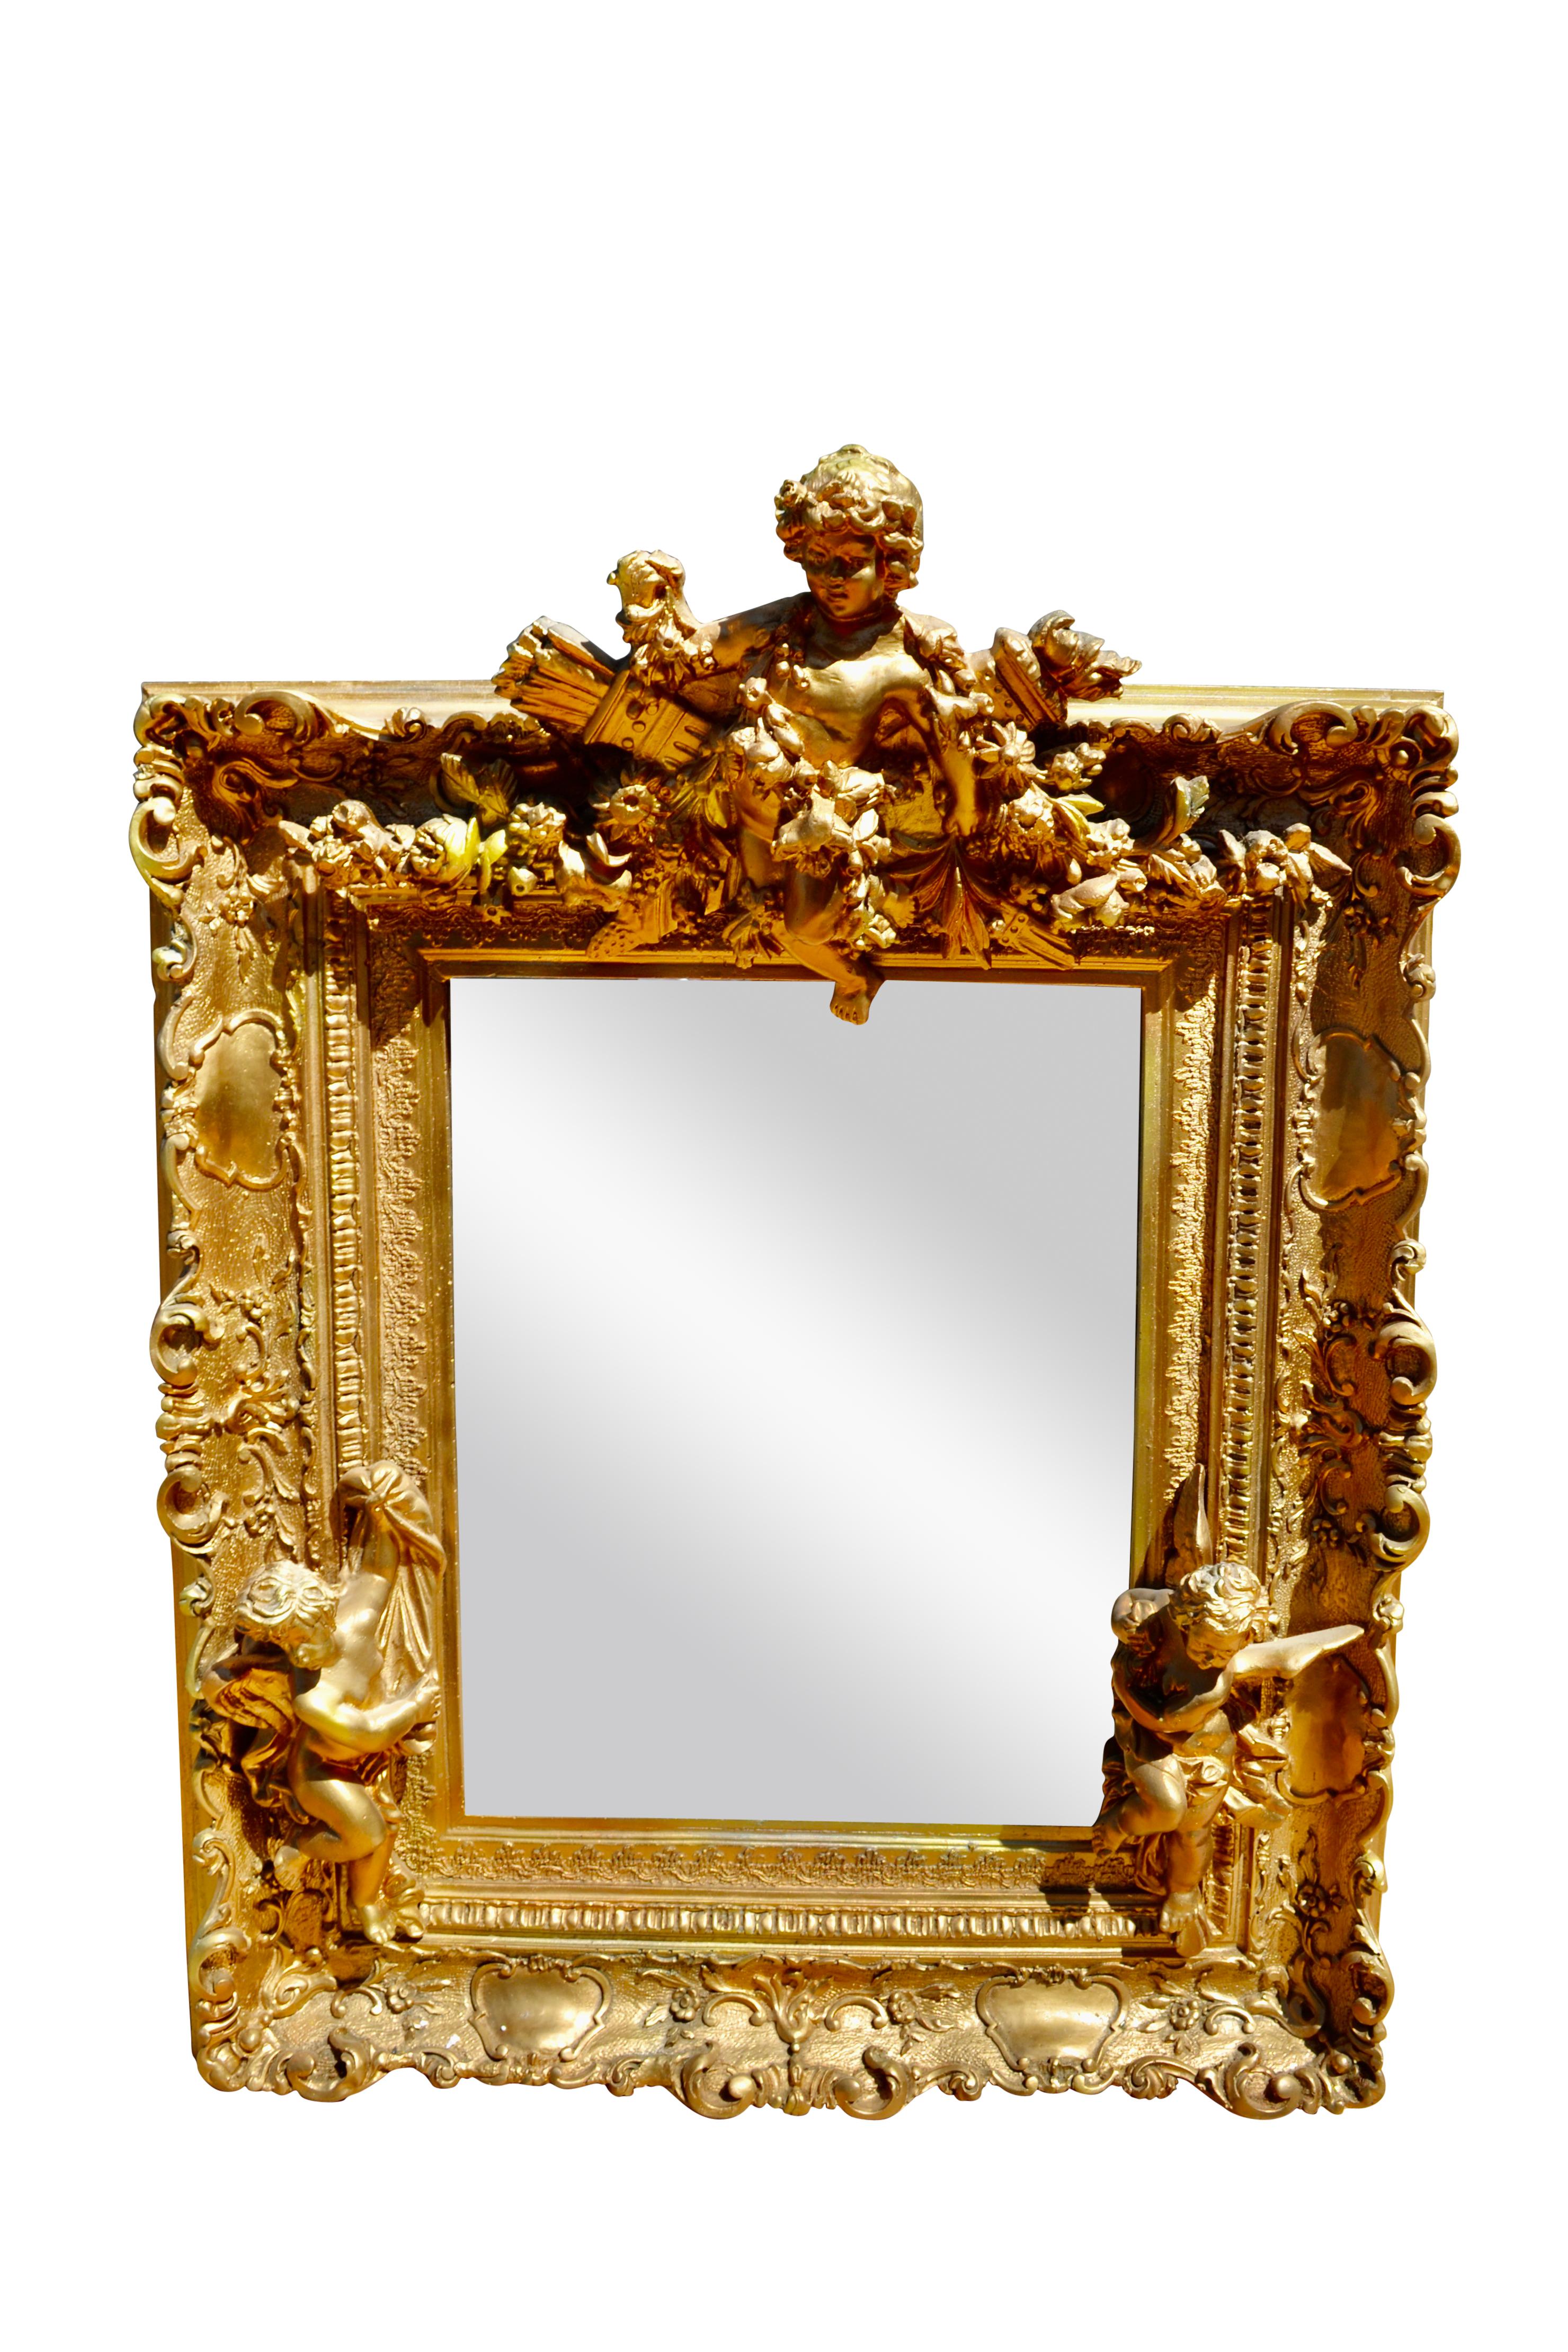 Un rare et très inhabituel cadre de miroir en bois sculpté, gesso et doré dans le plein style français Napoléon III. Le cadre doré lui-même est entièrement décoré de cartouches et est en outre agrémenté de trois appliques en bois sculpté et doré